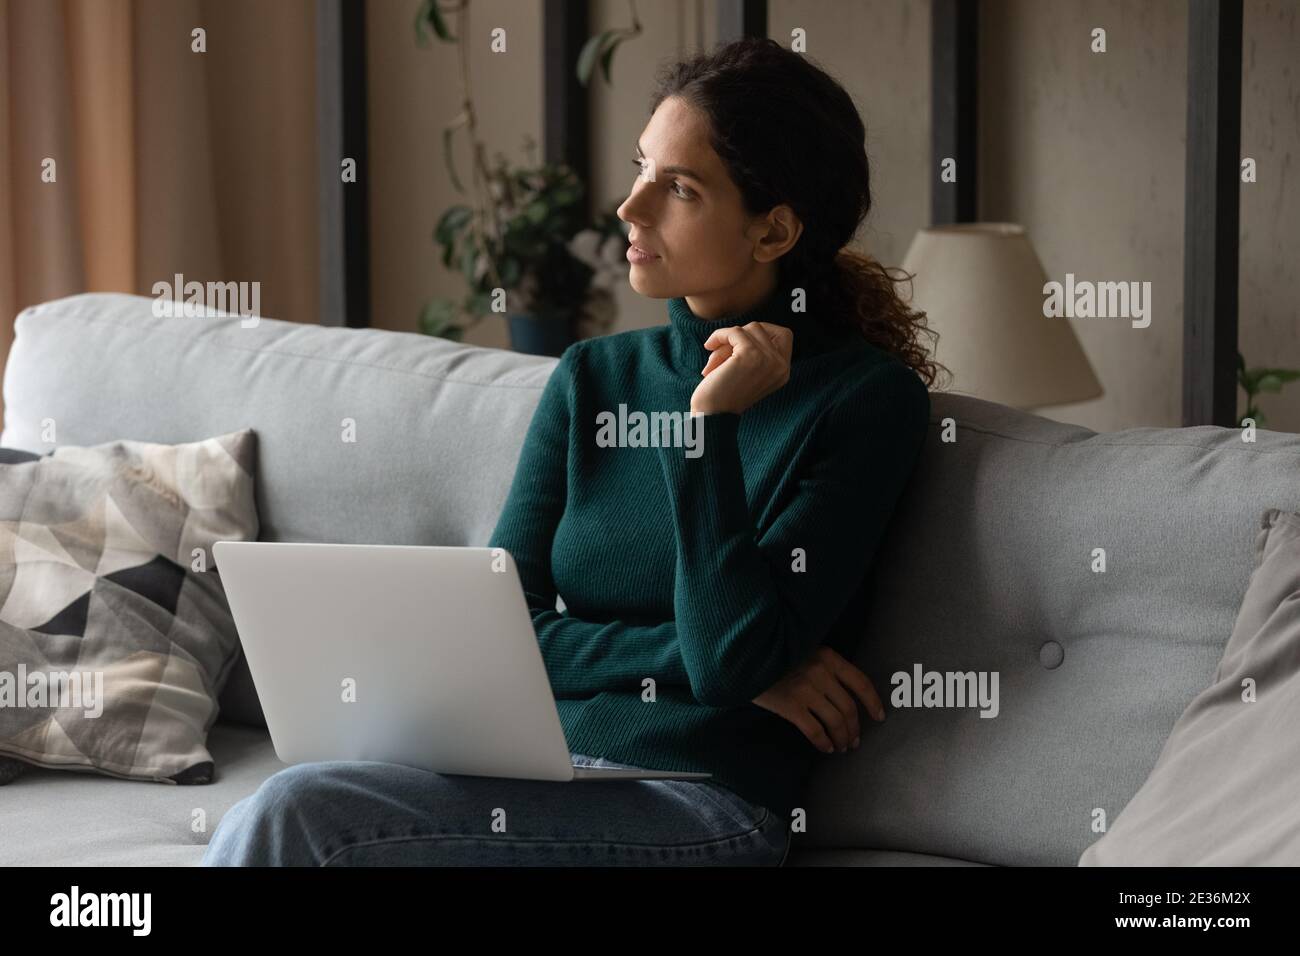 Une jeune femme pensive travaille sur un ordinateur portable Banque D'Images